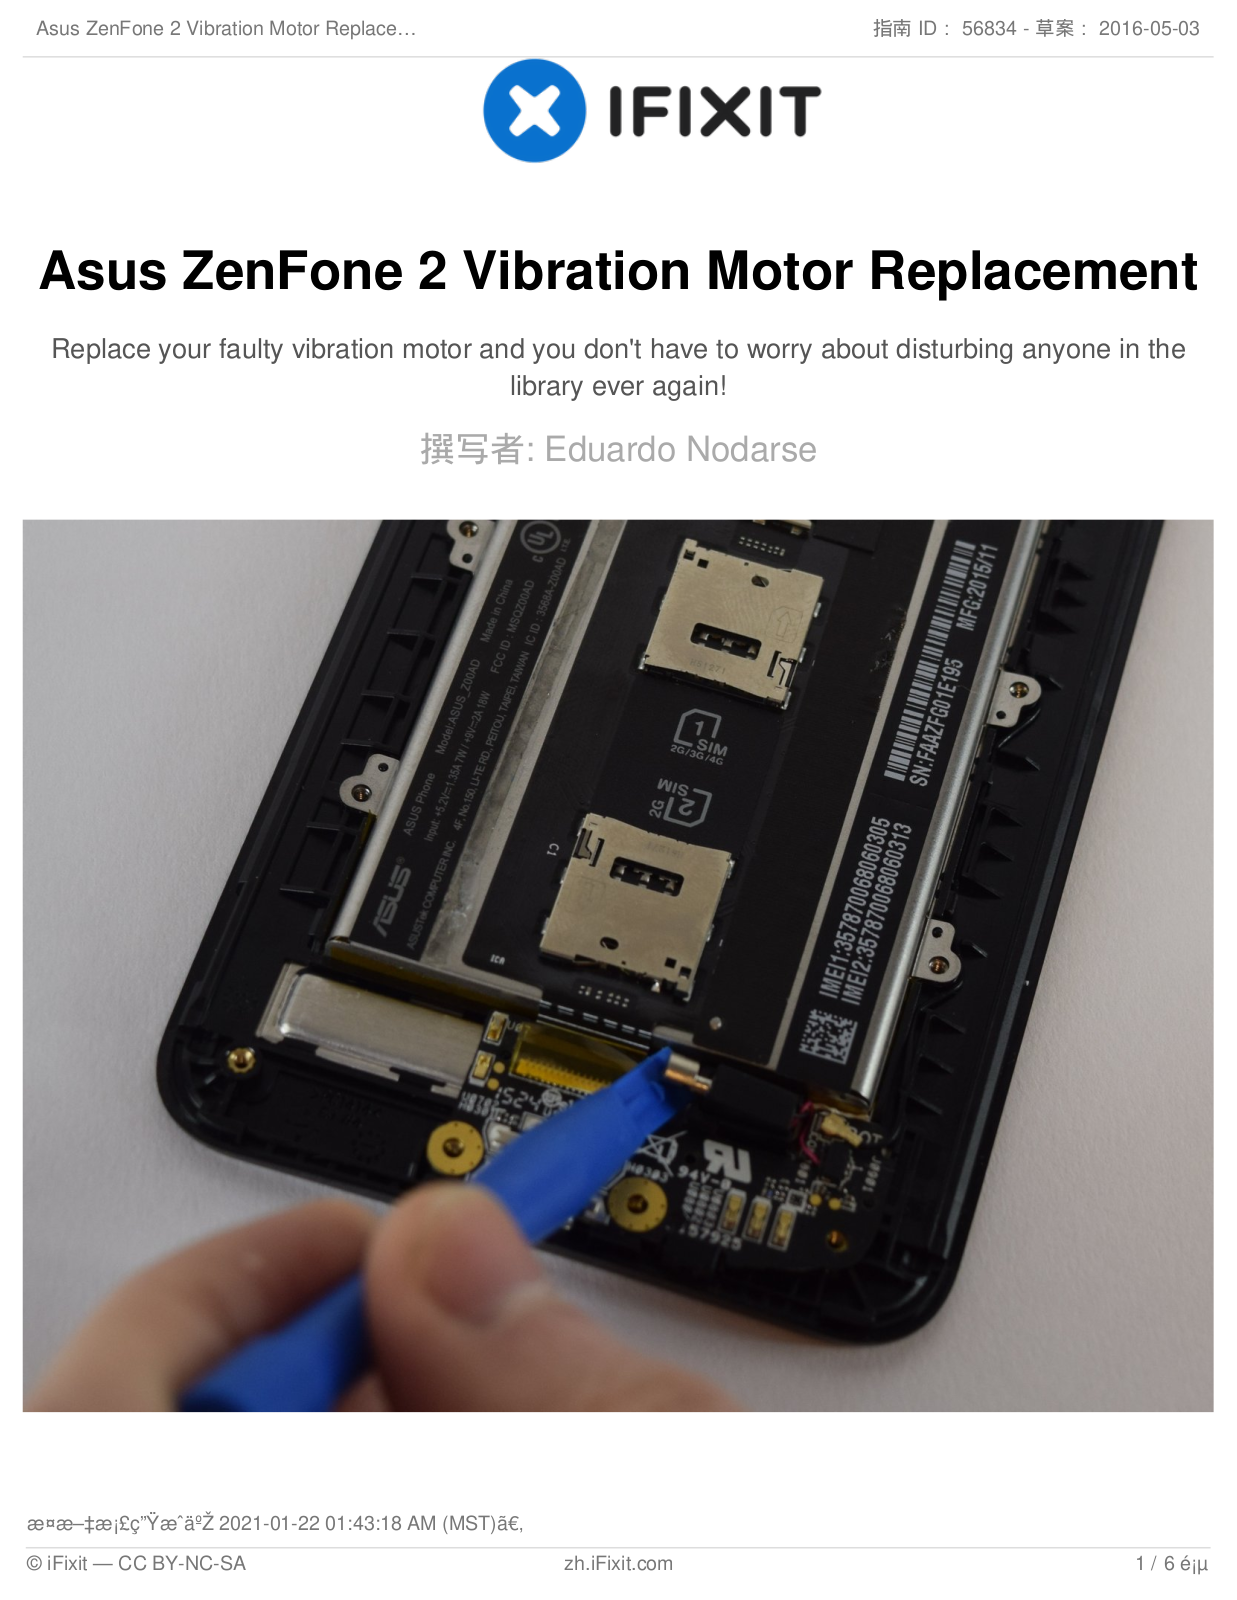 Asus ZenFone 2 User Manual